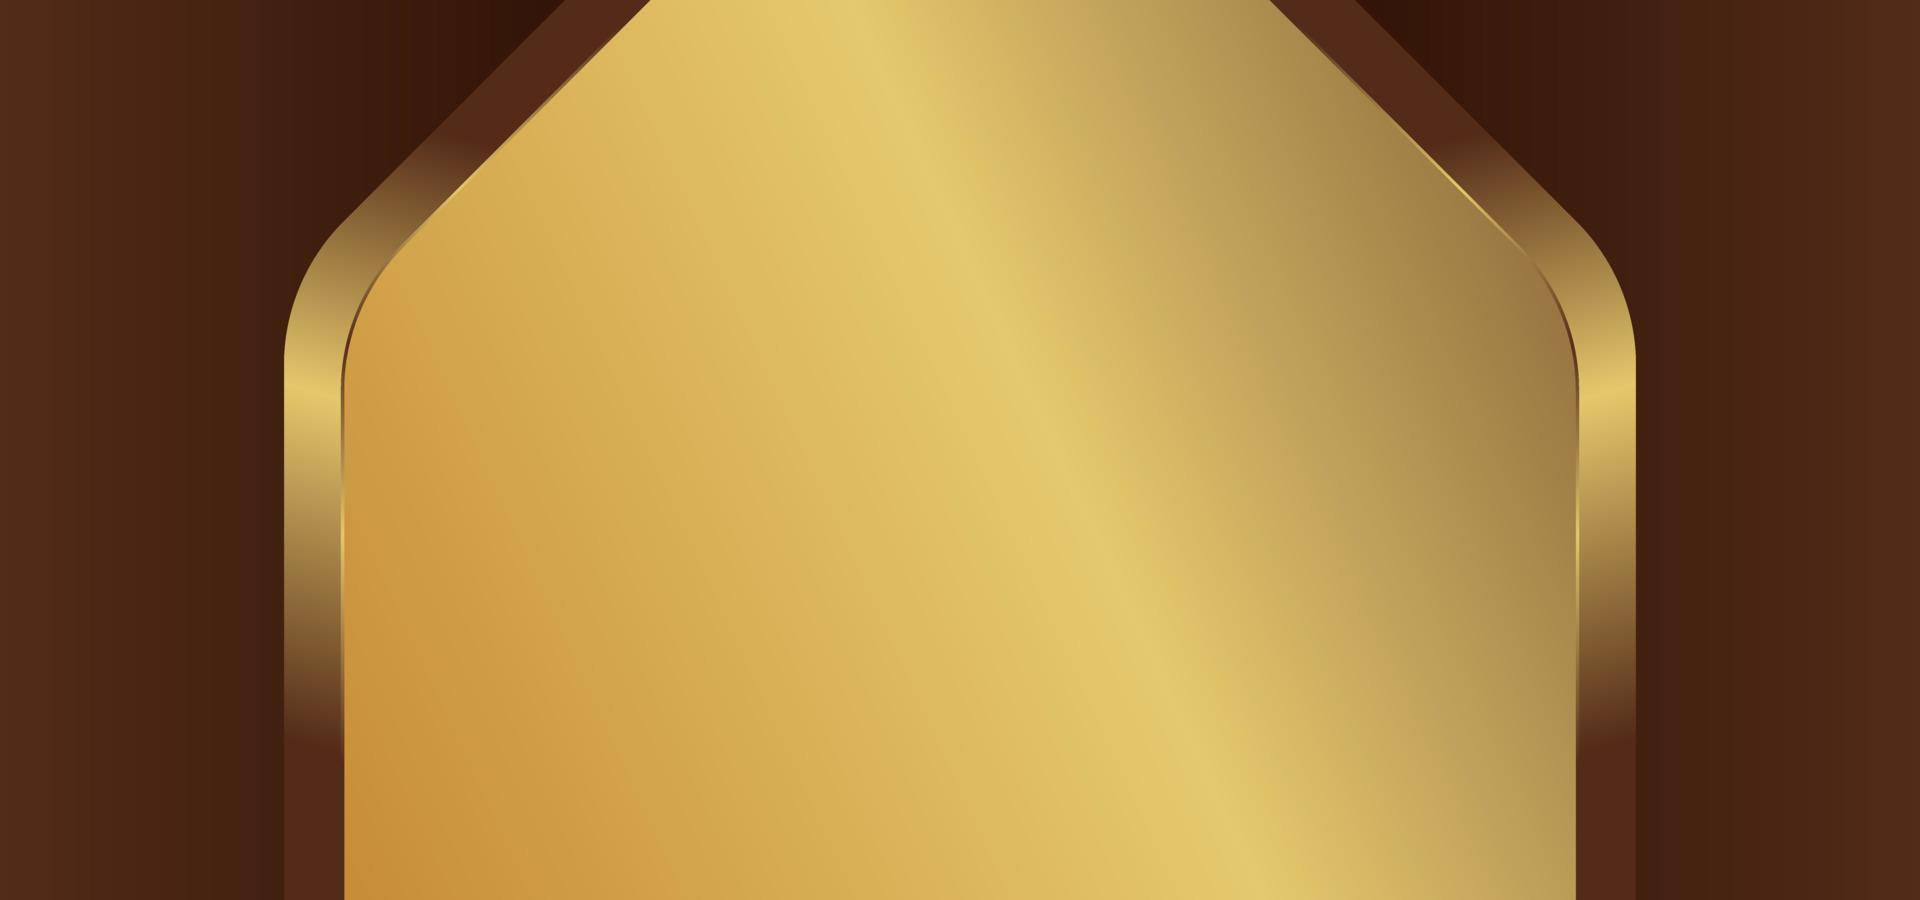 fond de texture dorée avec panneau doré vecteur